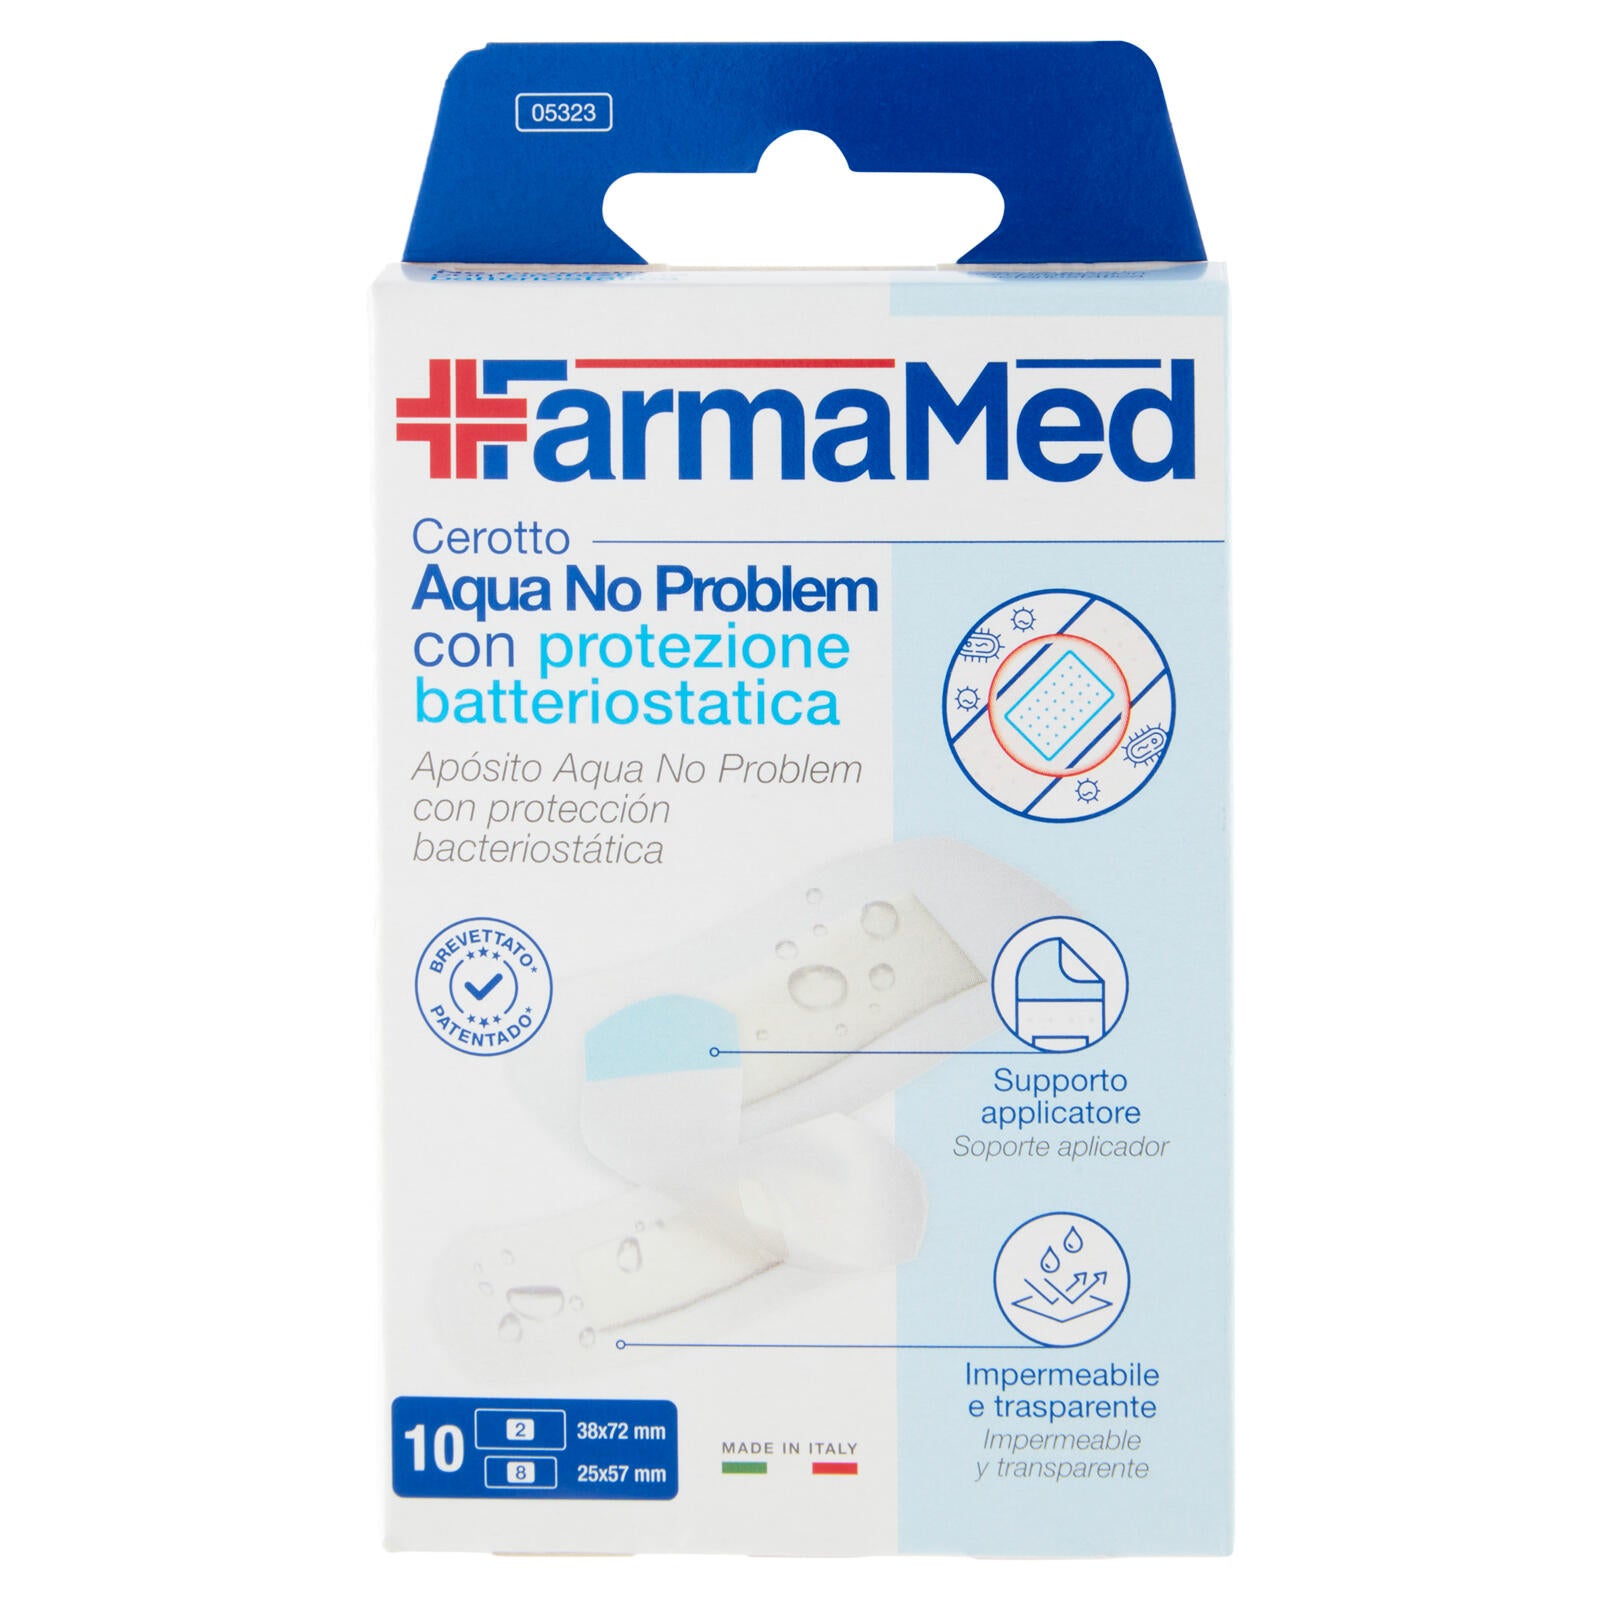 FarmaMed Cerotto Aqua No Problem con protezione batteriostatica 10 pz